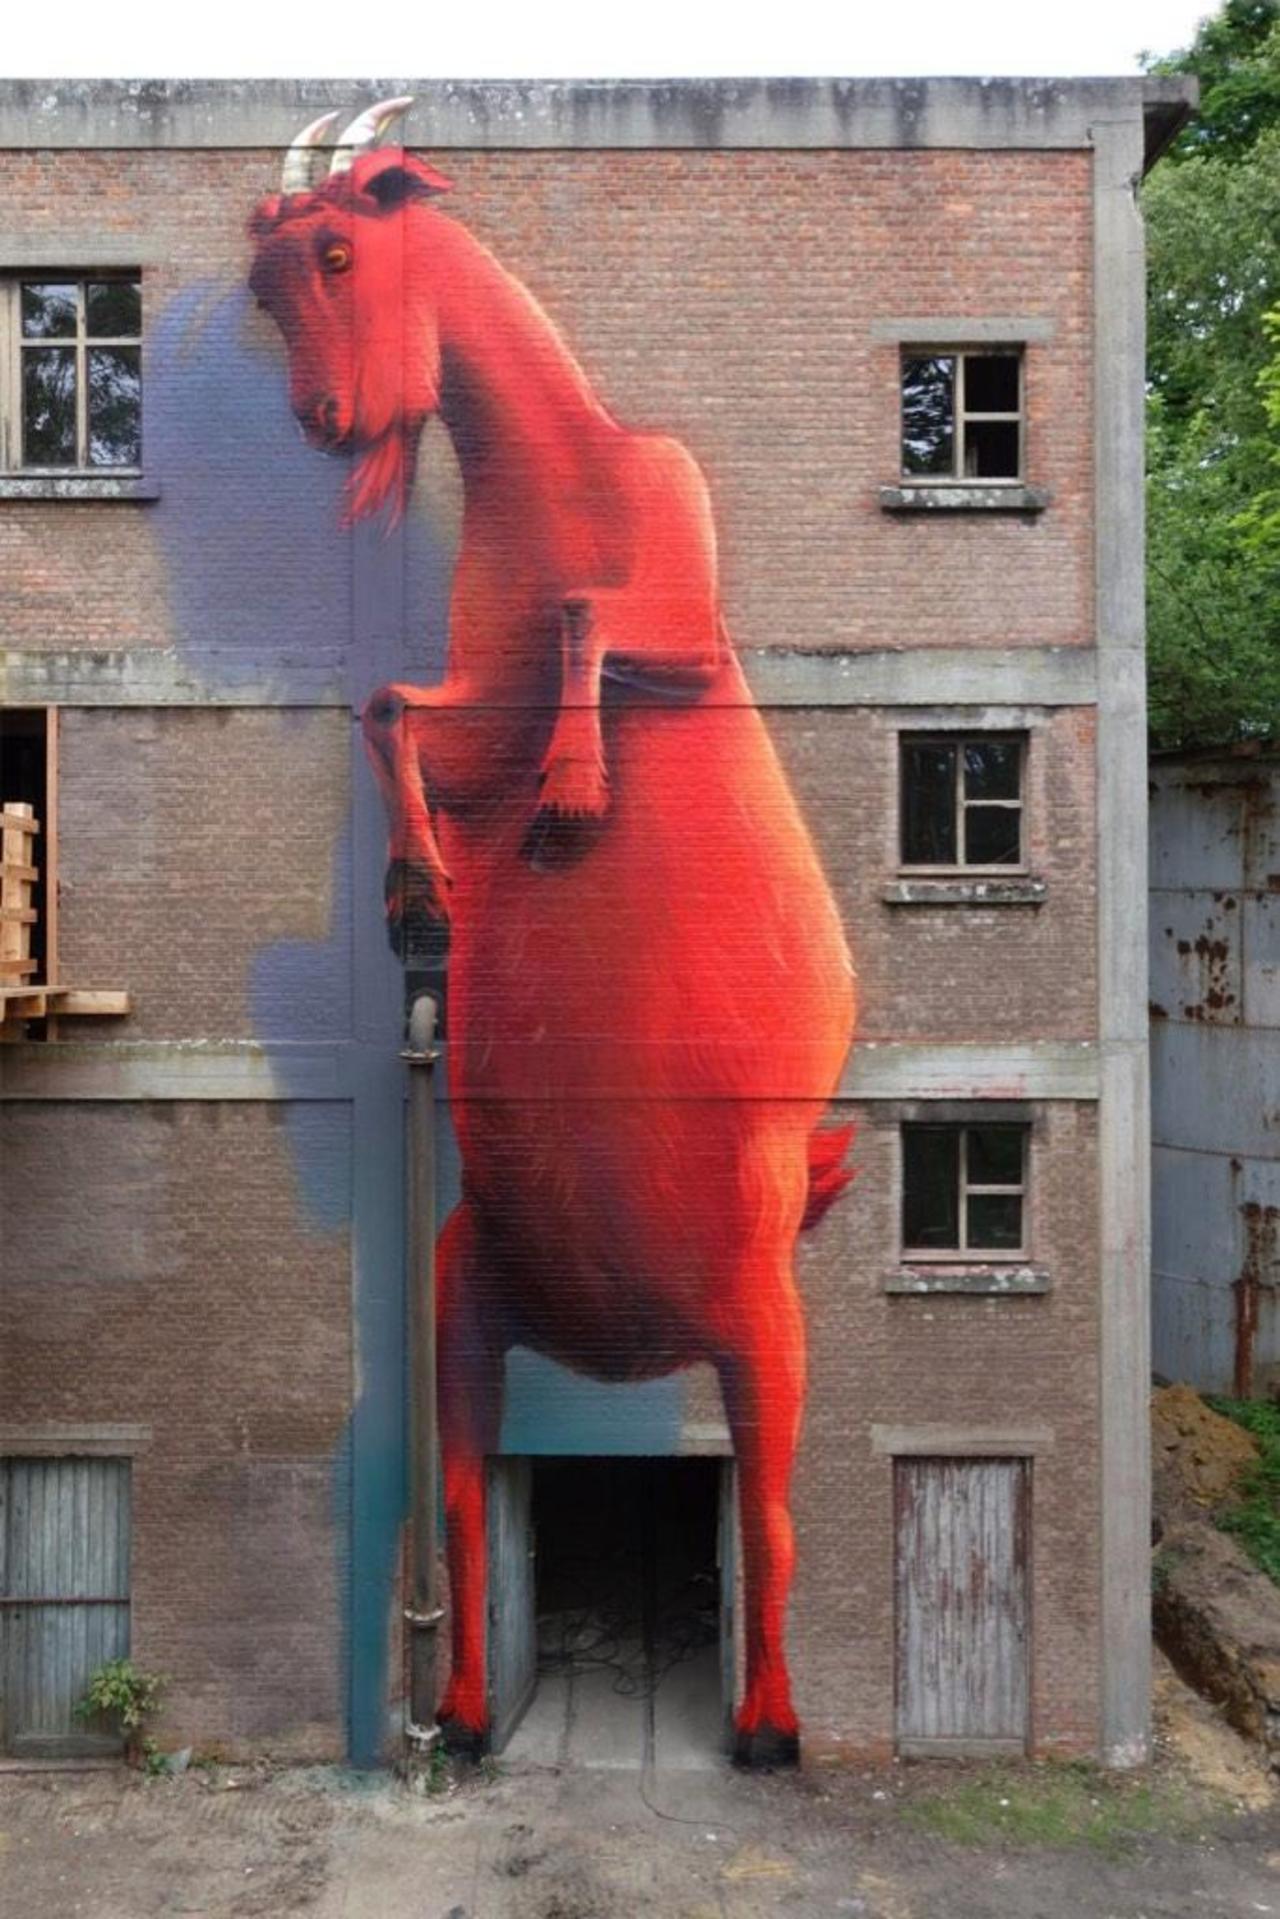 Super A / "Red Devil"
Mural for Street Art Festival Belgium at BLOSO Hofstade (BE)

#StreetArt #Art #graffiti #mural http://t.co/lufvOG4kh6